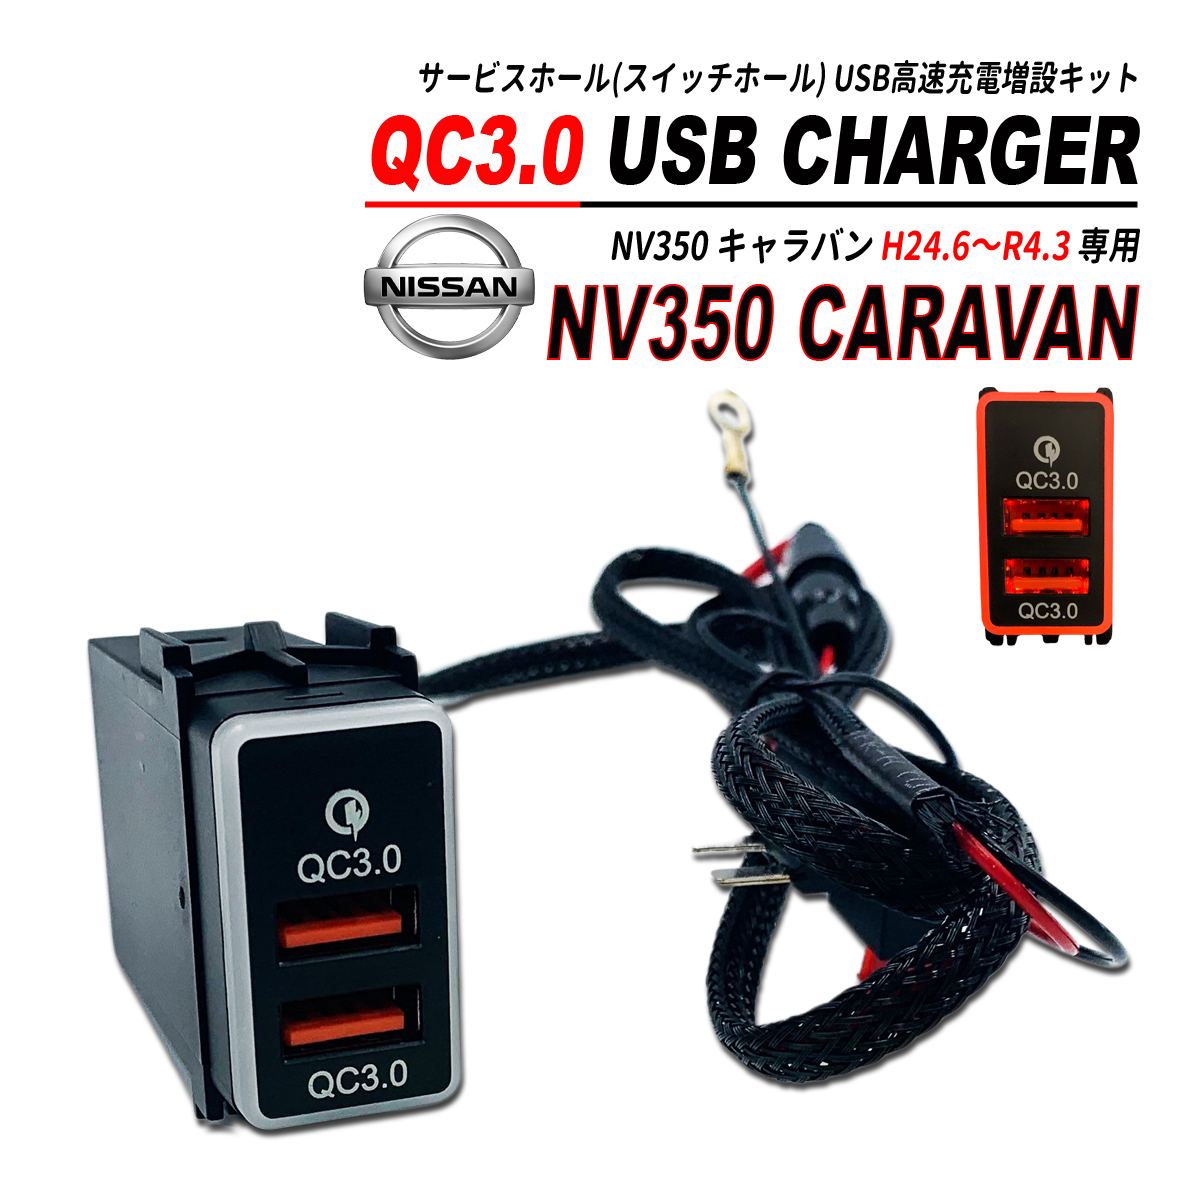 NV350 キャラバン E26 前期 / 後期 QC3.0 USB 急速充電 クイックチャージ 2ポート LED搭載の画像1